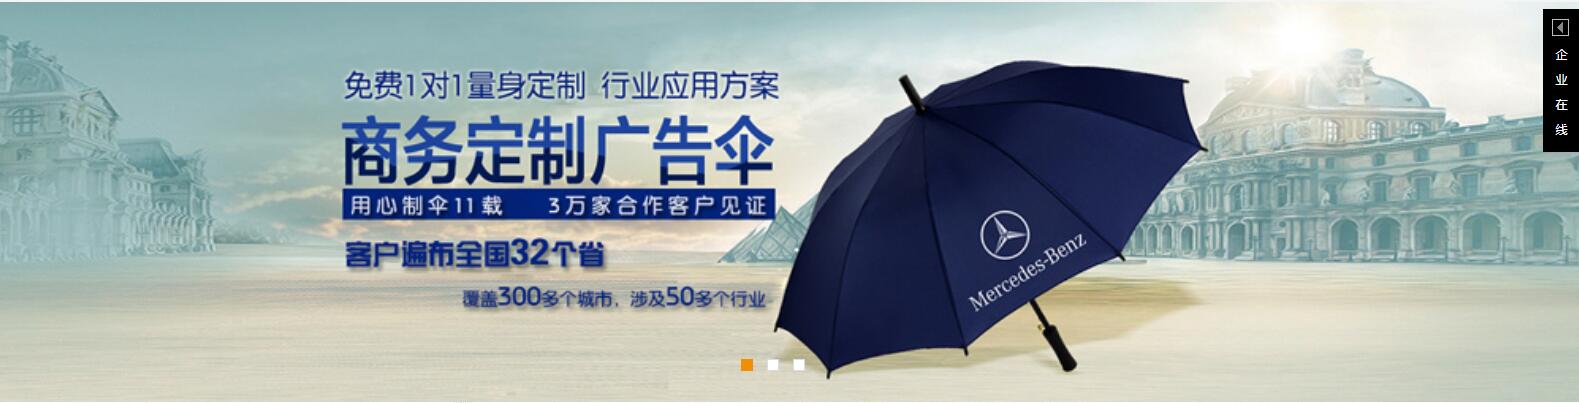 贵州太阳伞厂定做贵州广告太阳伞